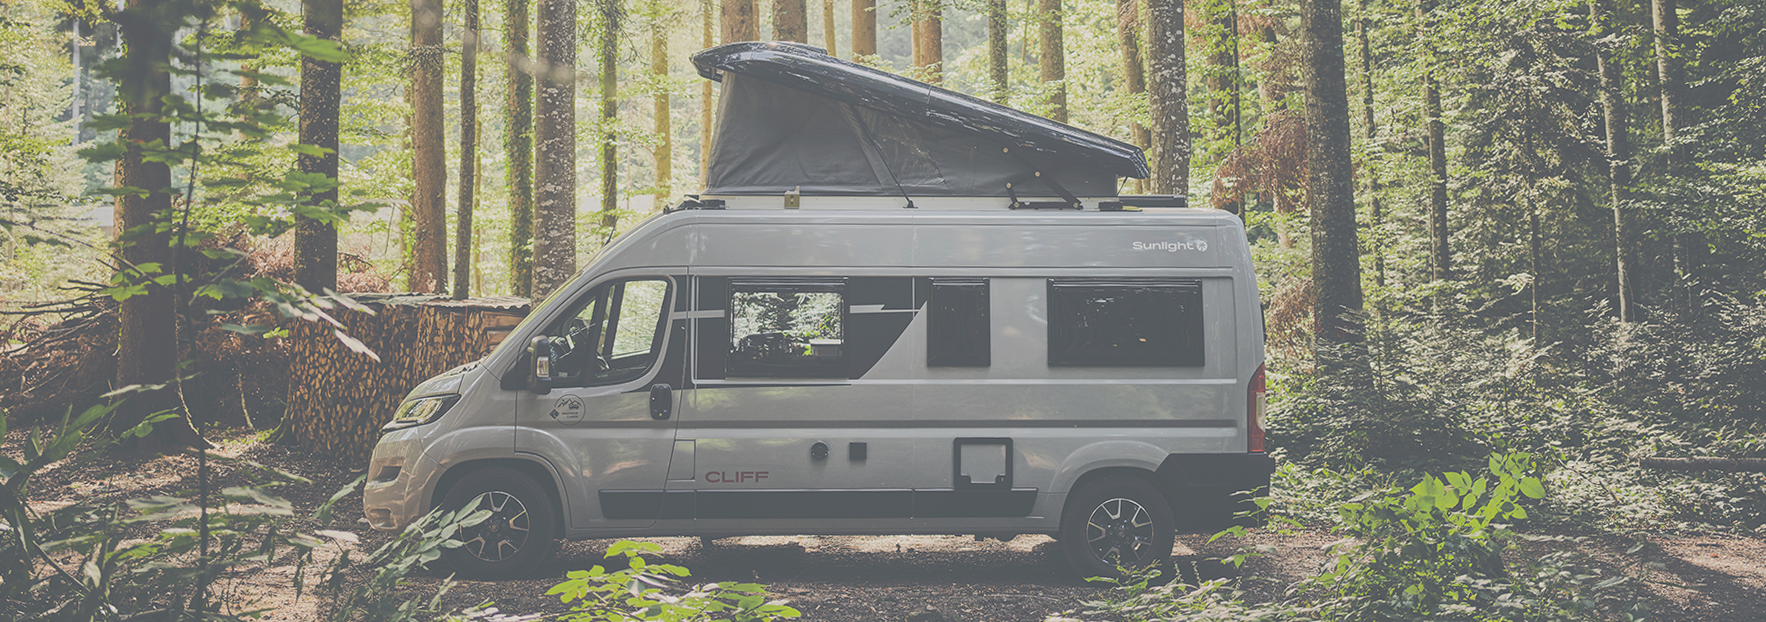 Sunlight CLIFF 600 Adventure mit Schlafdach, steht im Wald, zwischen Bäumen, Abenteuer, Outdoor-Camping, Miet-Camper